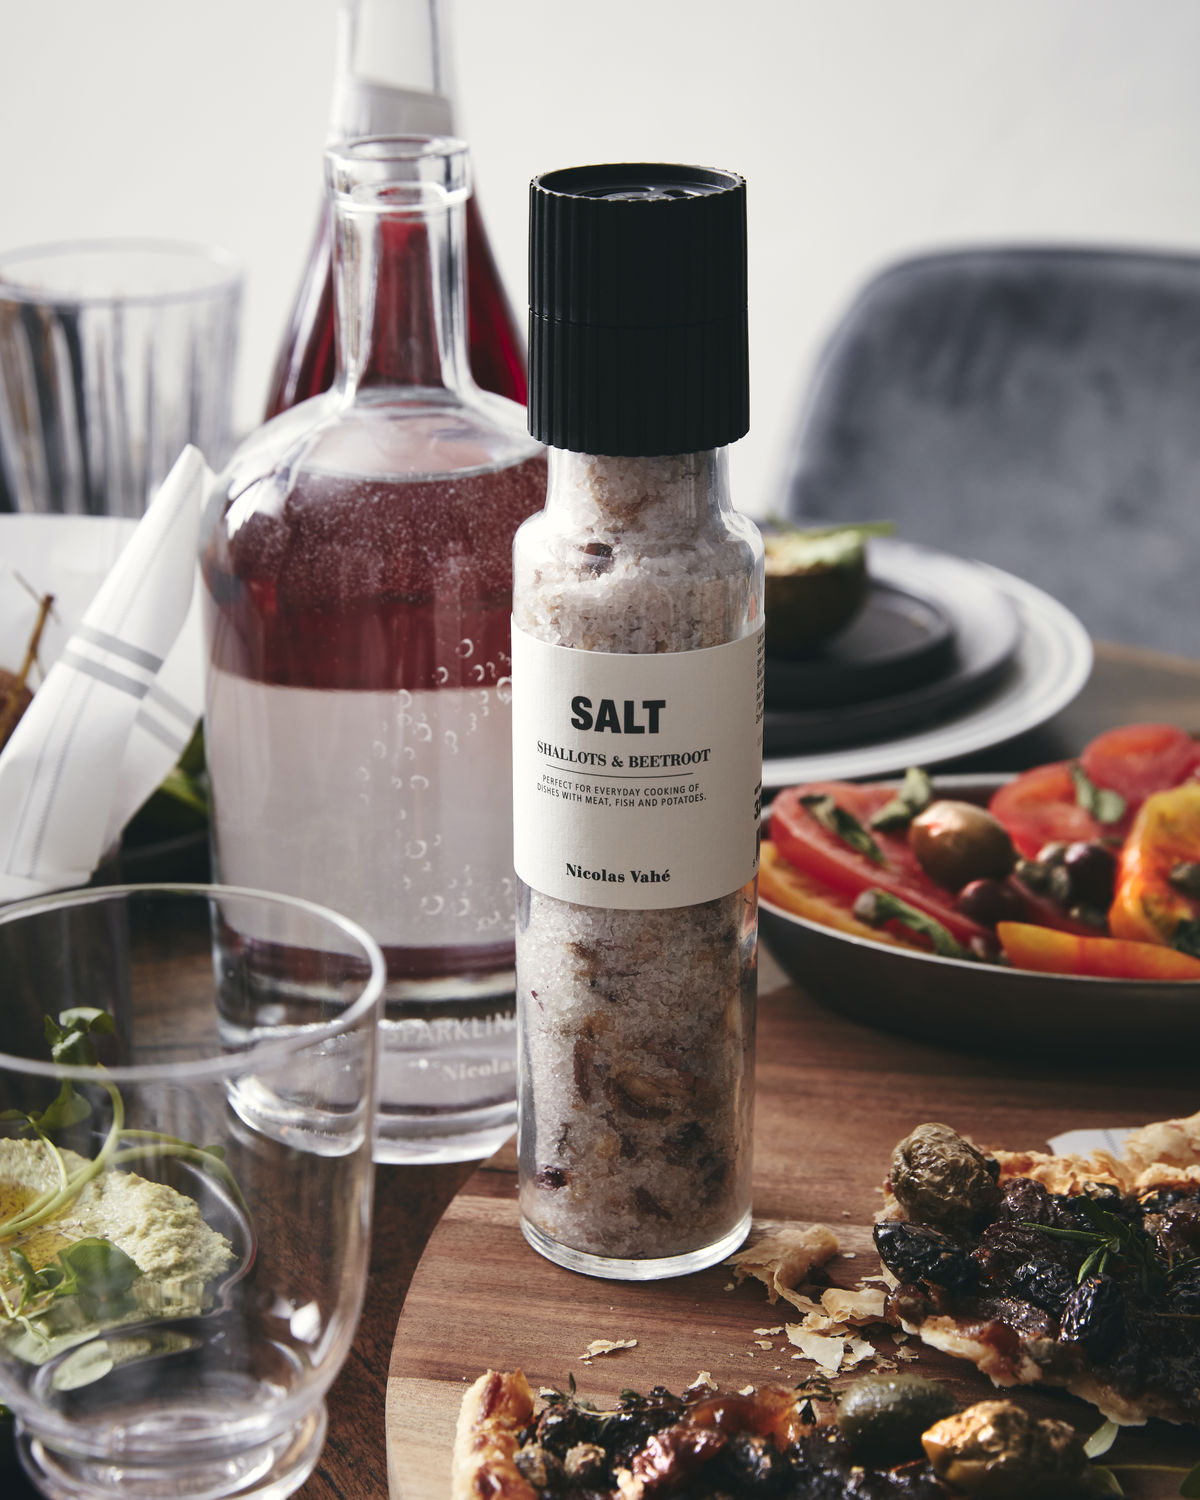 Salt, Shallot & Beetroot, 325 g.